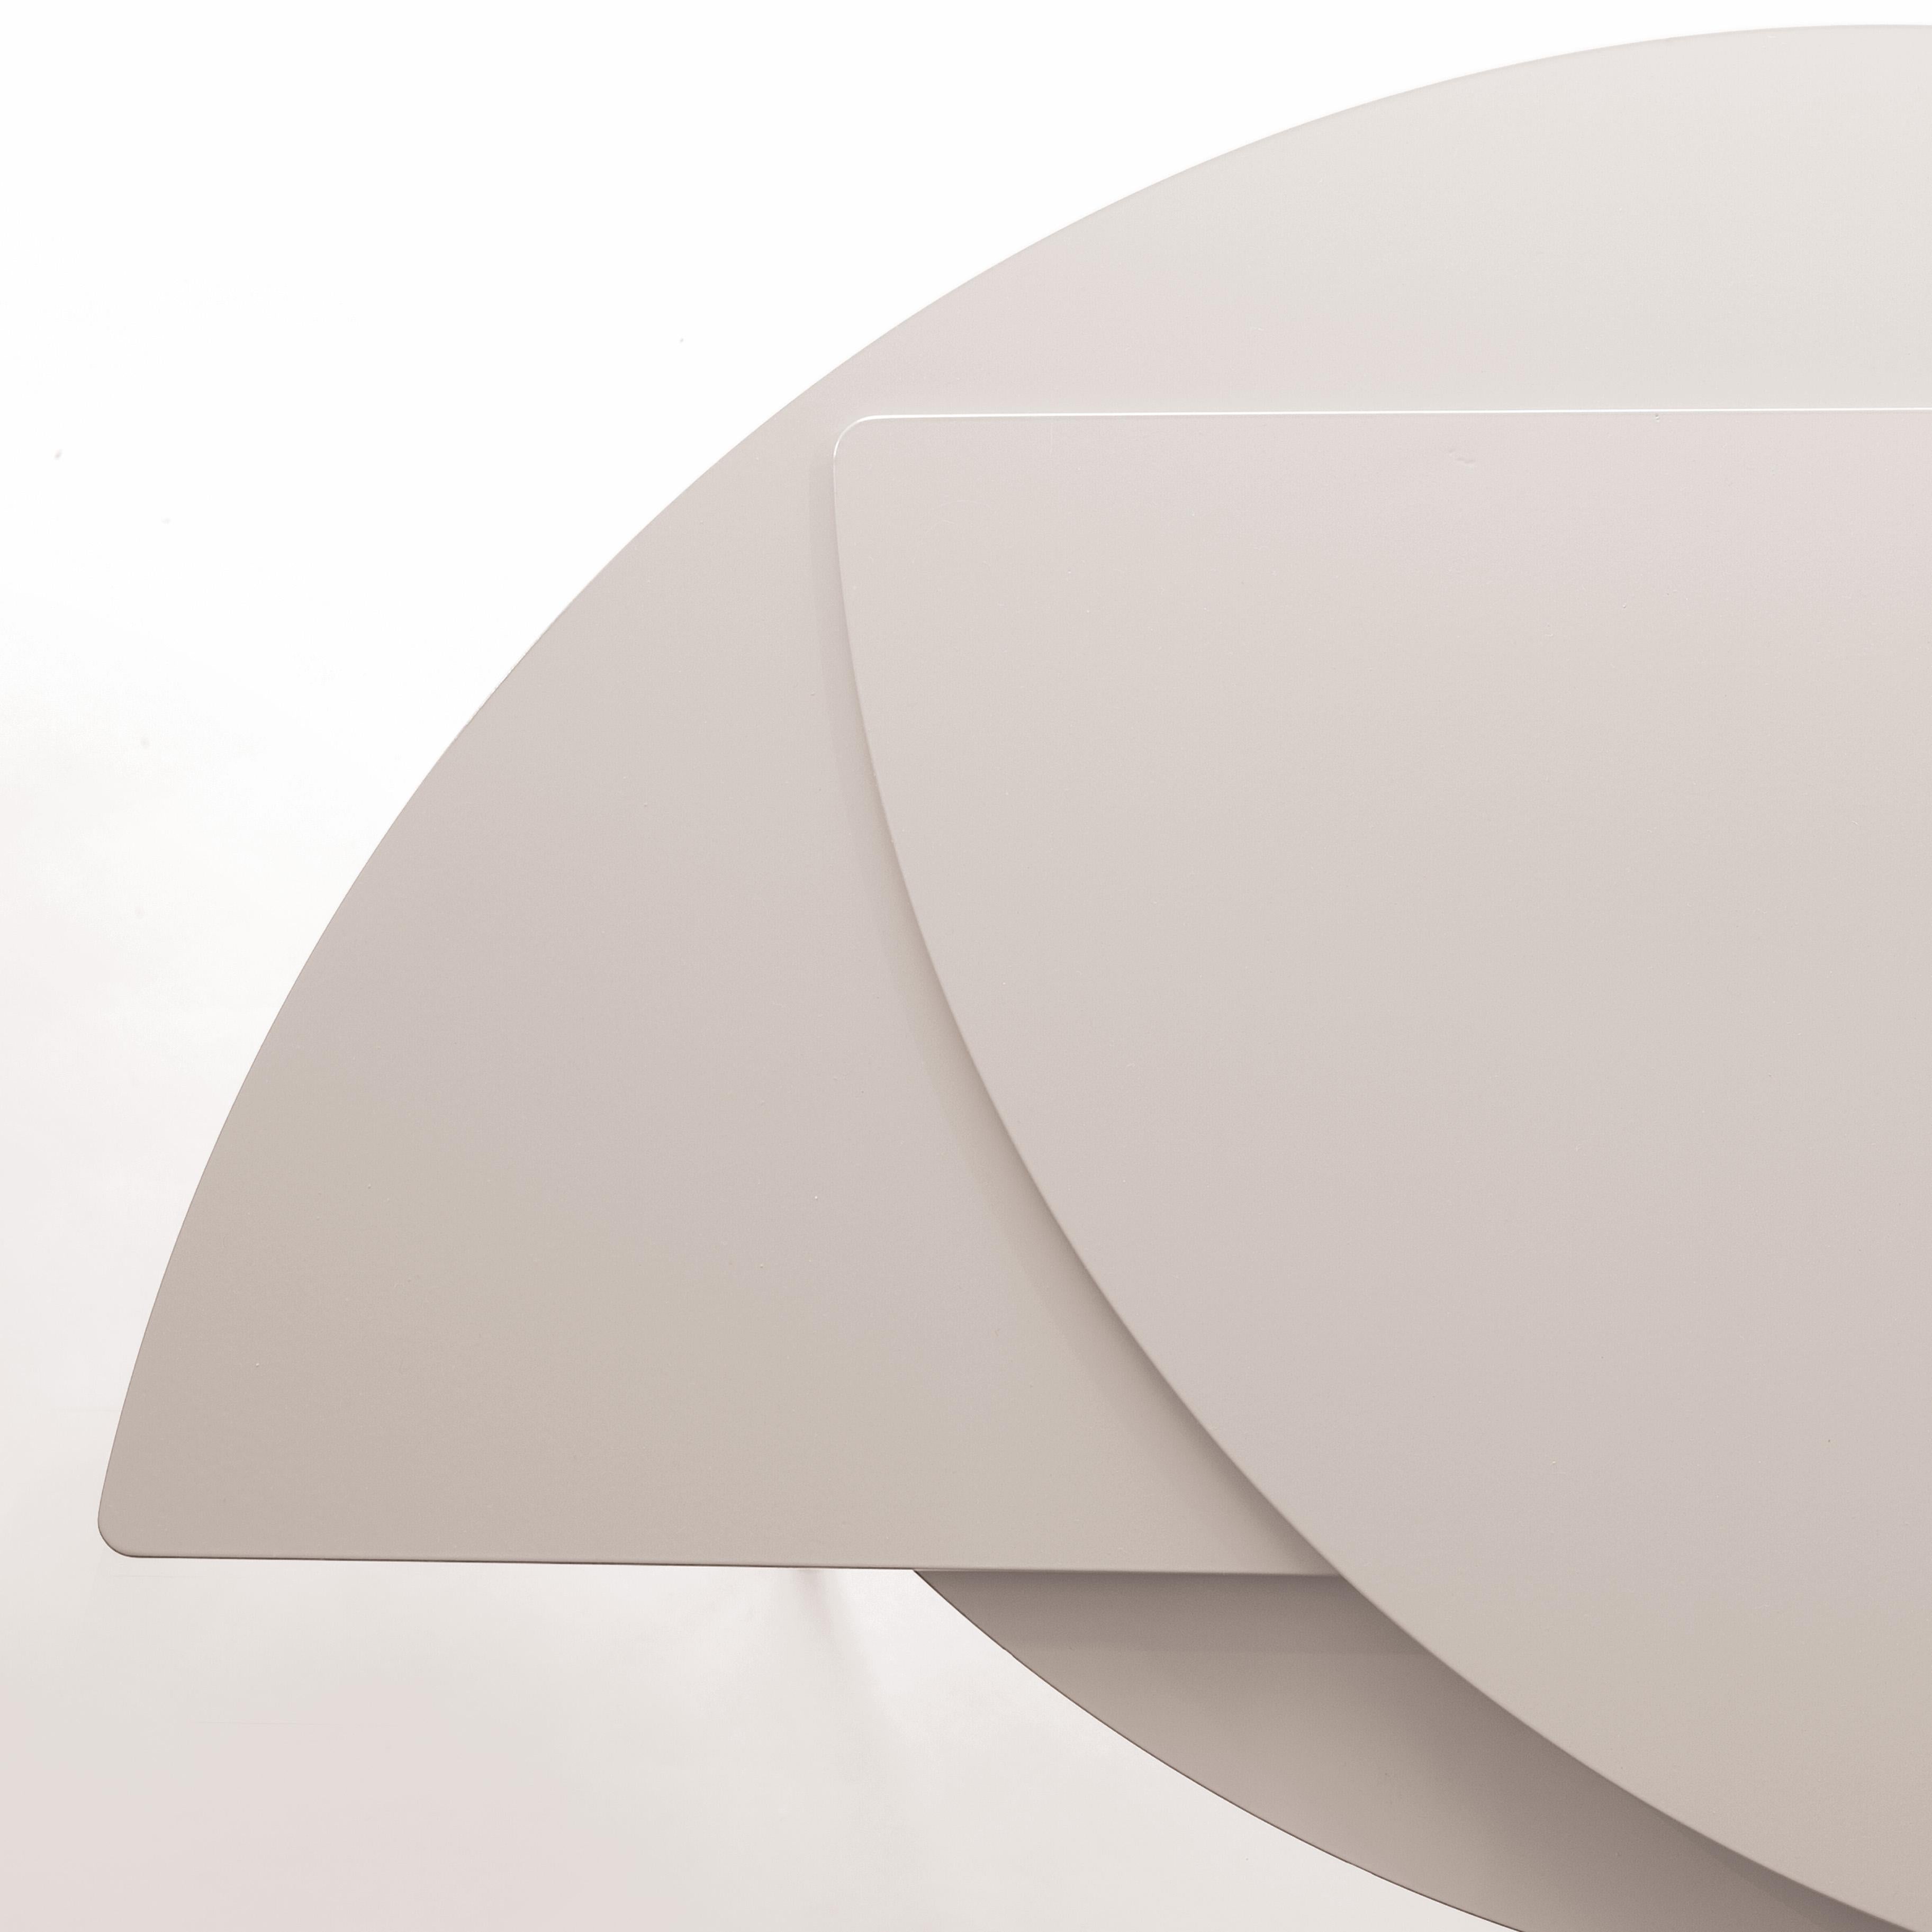 Alhena est une table basse extensible en métal blanc en édition limitée, qui fait partie de la collection Celestine conçue par Jacobsroom Studio à Rome.
La forme abstraite de la table basse s'inspire d'un corps céleste évocateur : l'étoile